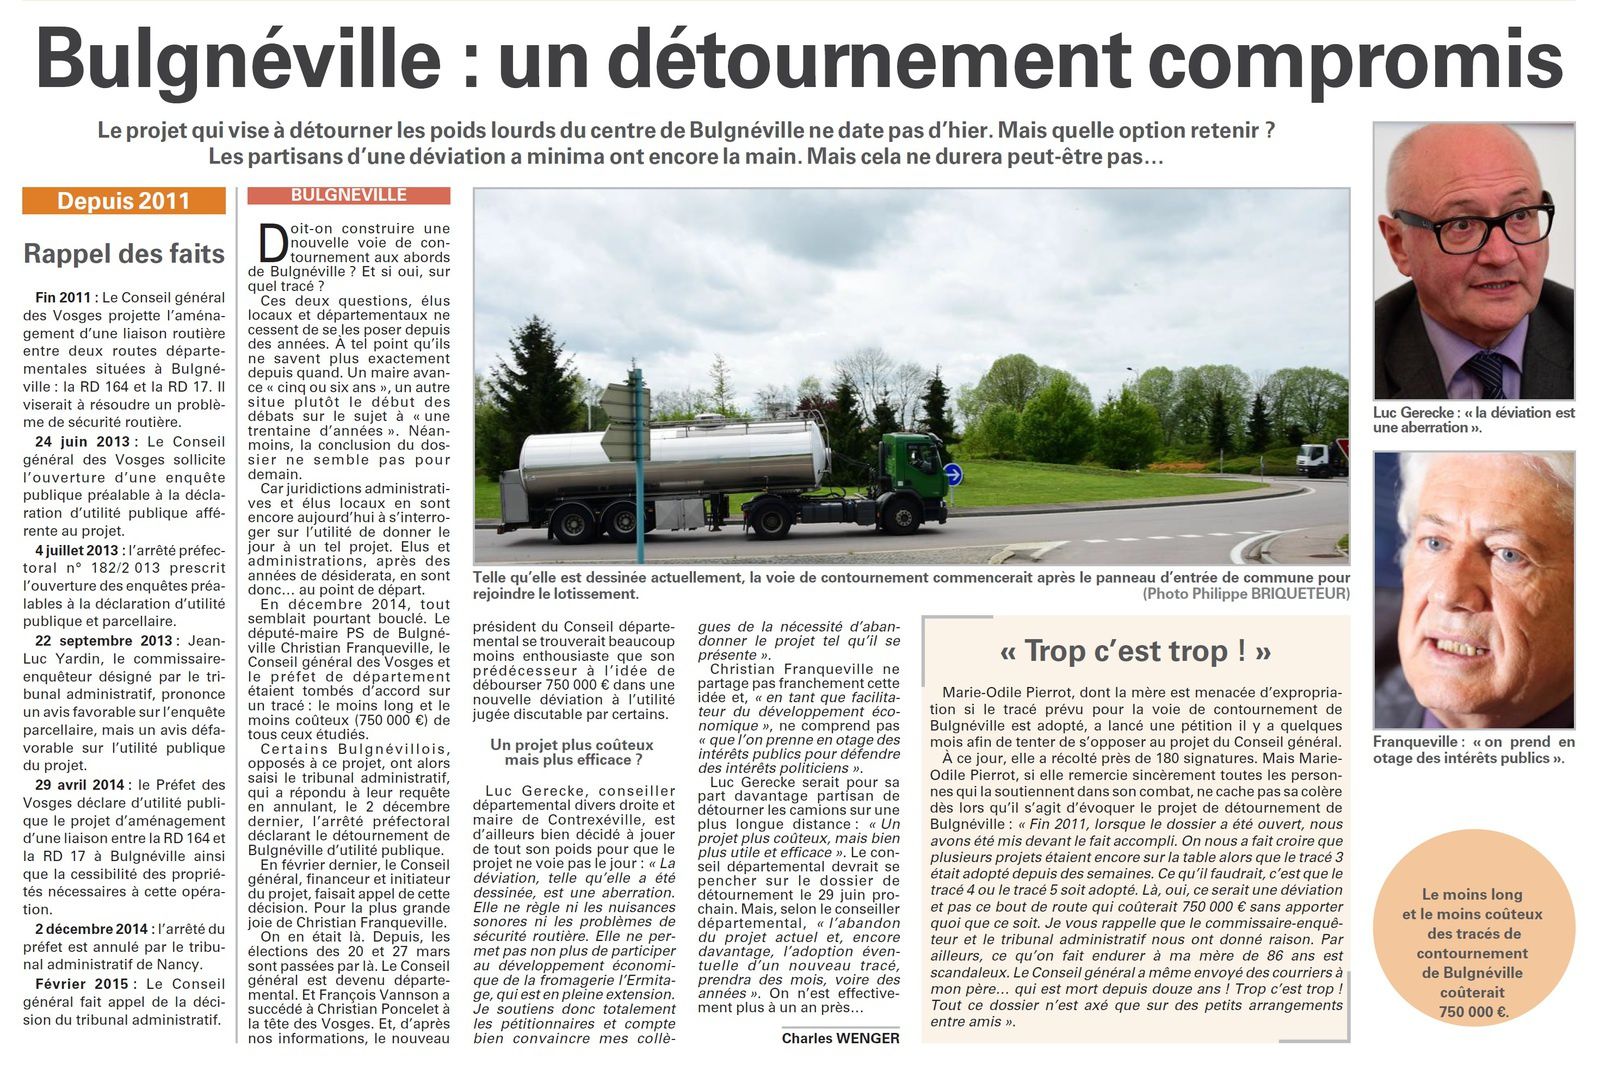 Bulgnéville : un contournement compromis (Vosges Matin)